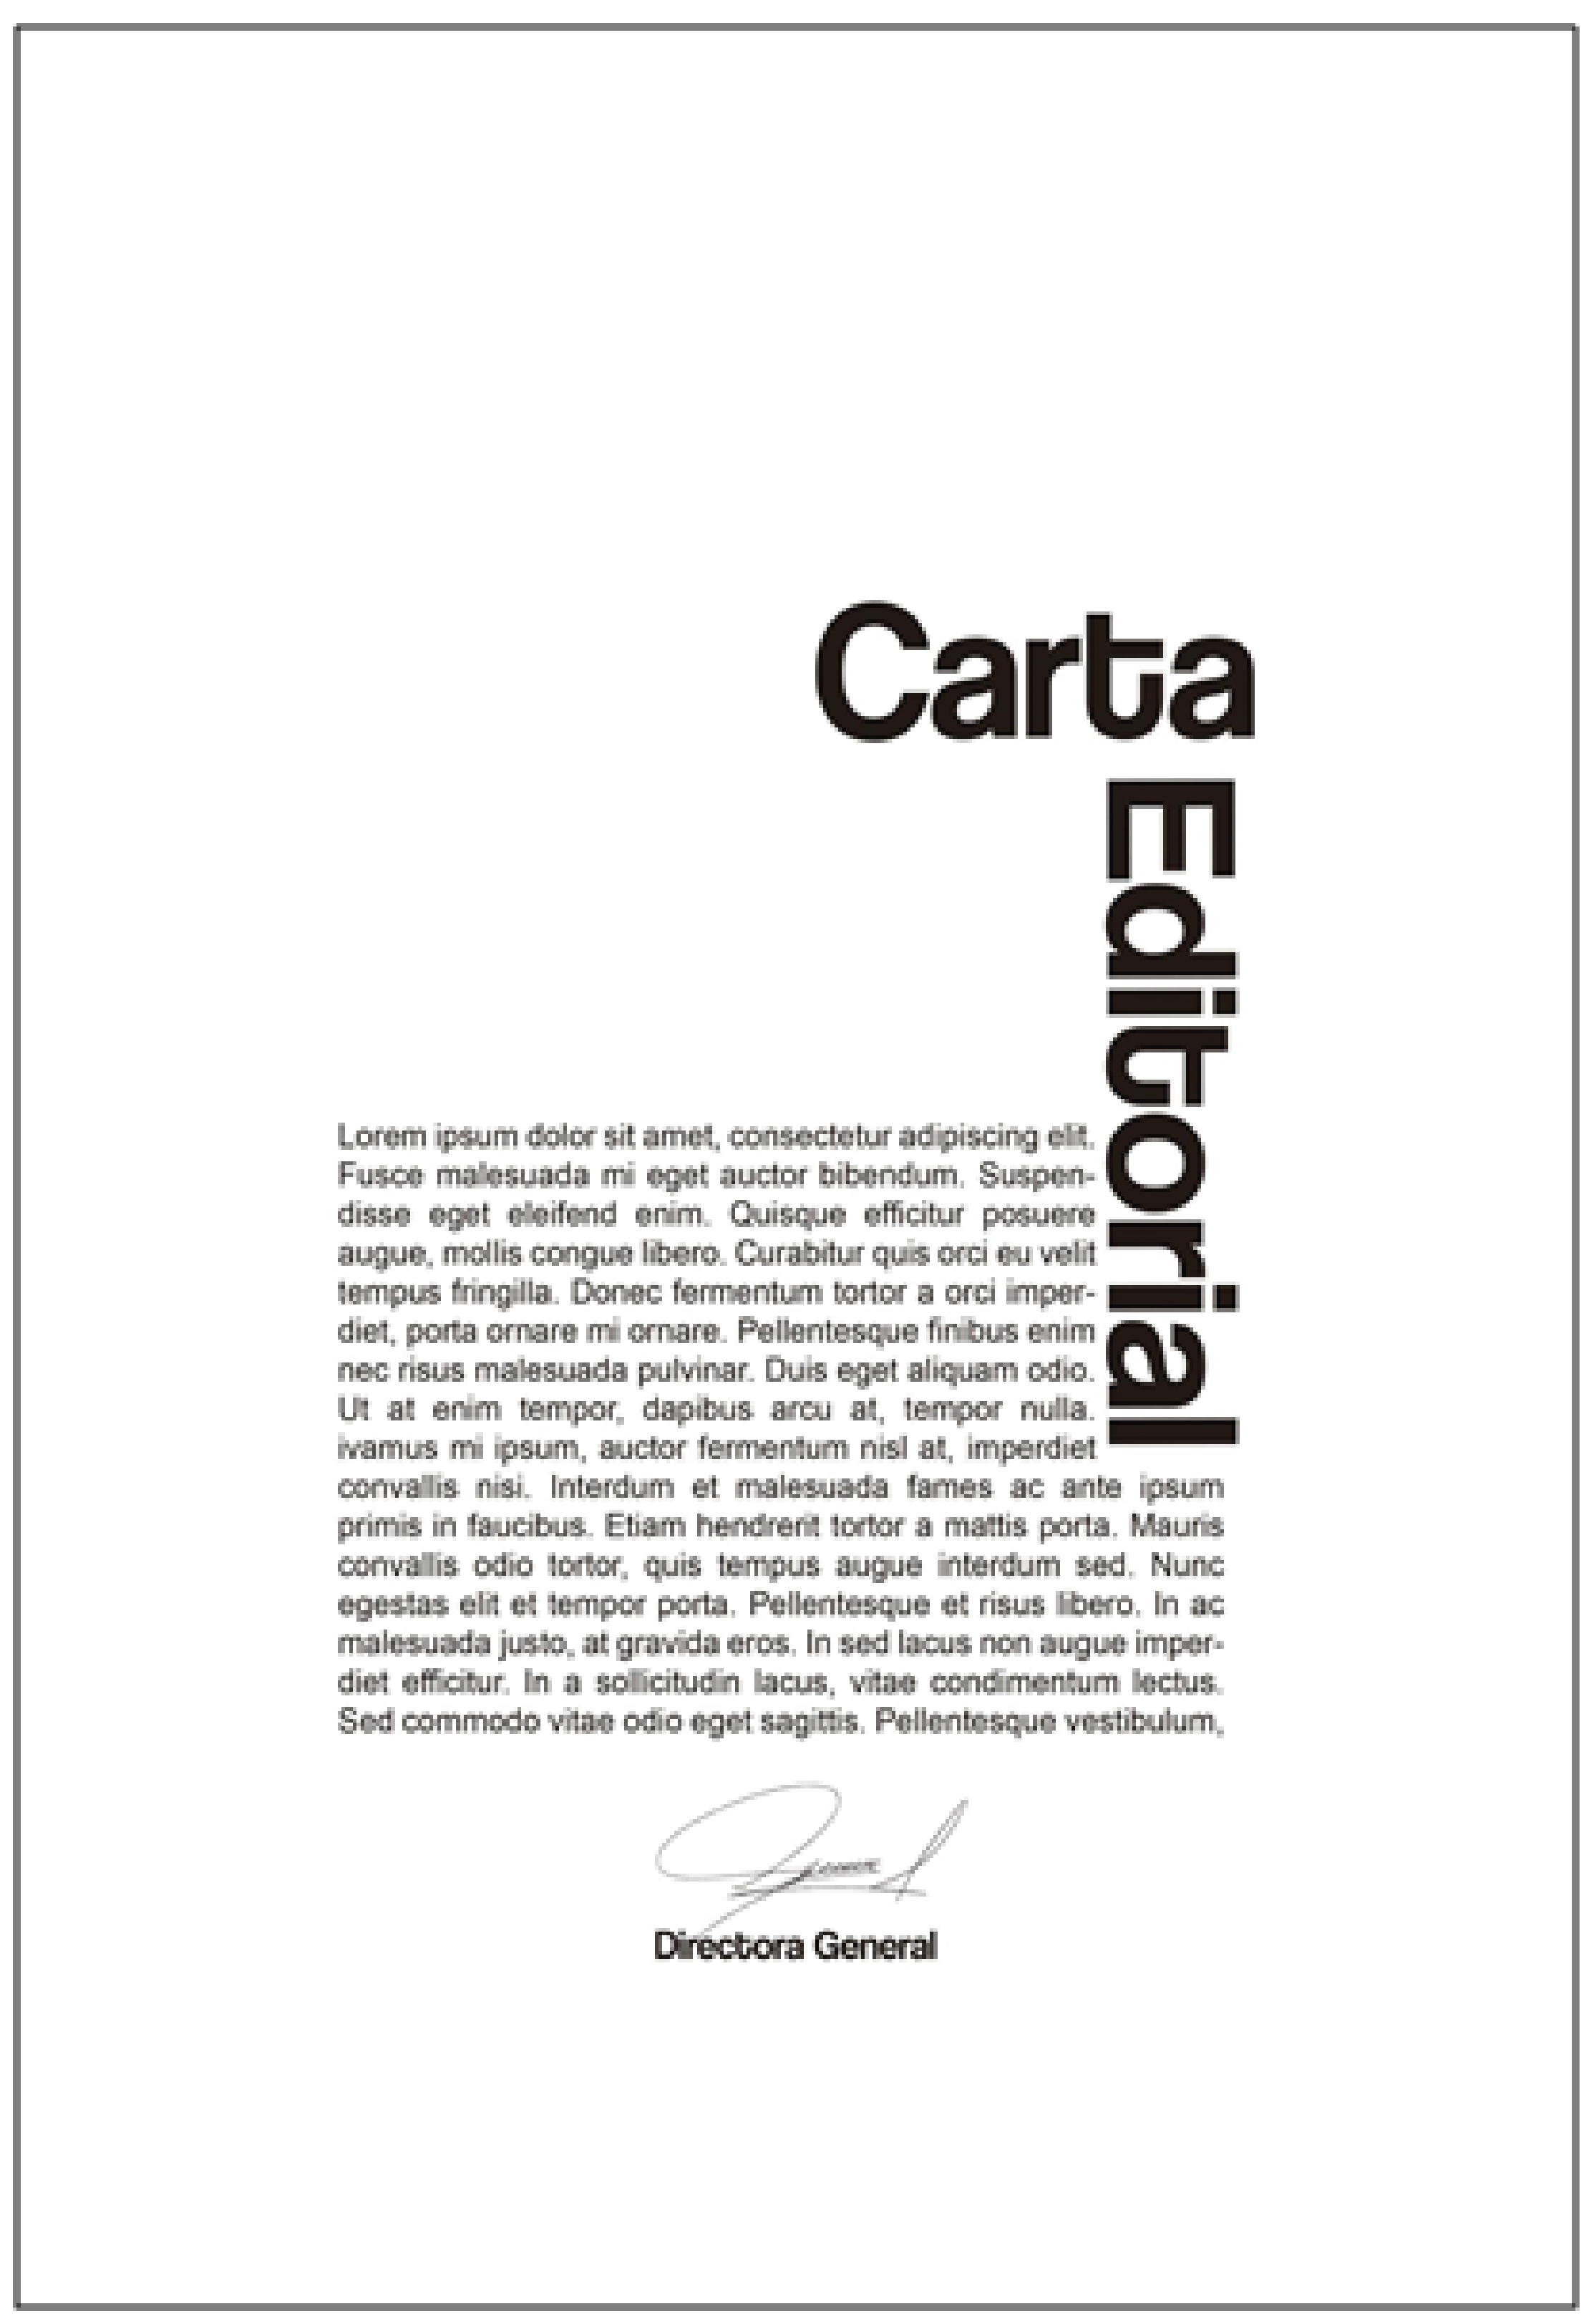 Diseño de carta editorial seleccionado para la revista Áurea:diseño+arte, retícula basada en la geometrización de una avestruz.